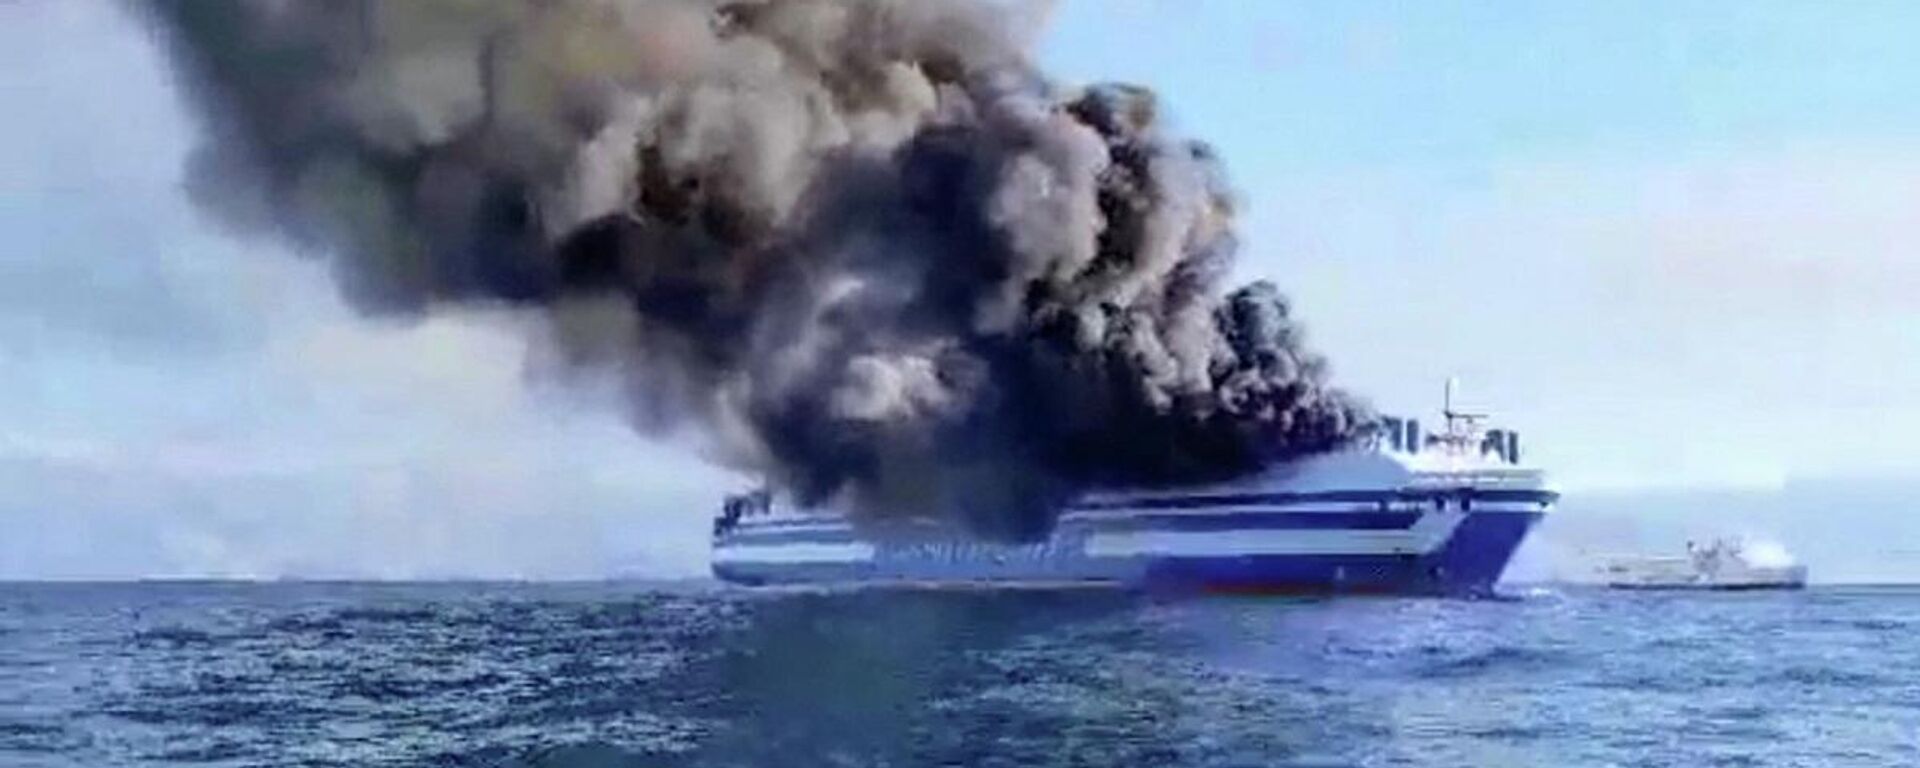 Yunanistan açıklarında 237'si yolcu olmak üzere 288 kişinin bulunduğu İtalya bandıralı feribotta yangın çıktı. - Sputnik Türkiye, 1920, 18.02.2022